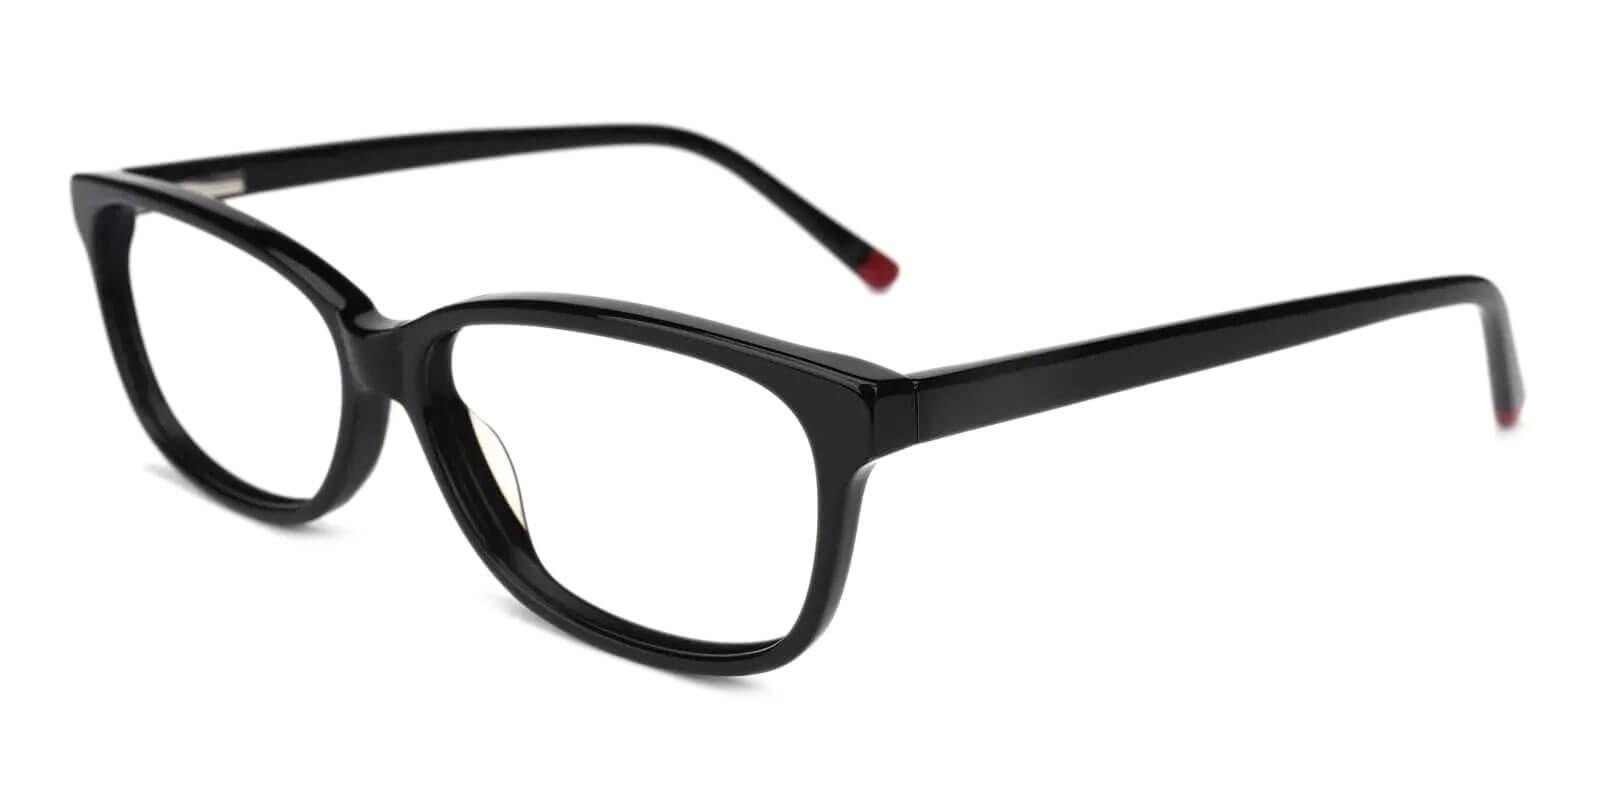 Levant Black Acetate Eyeglasses , SpringHinges , UniversalBridgeFit Frames from ABBE Glasses